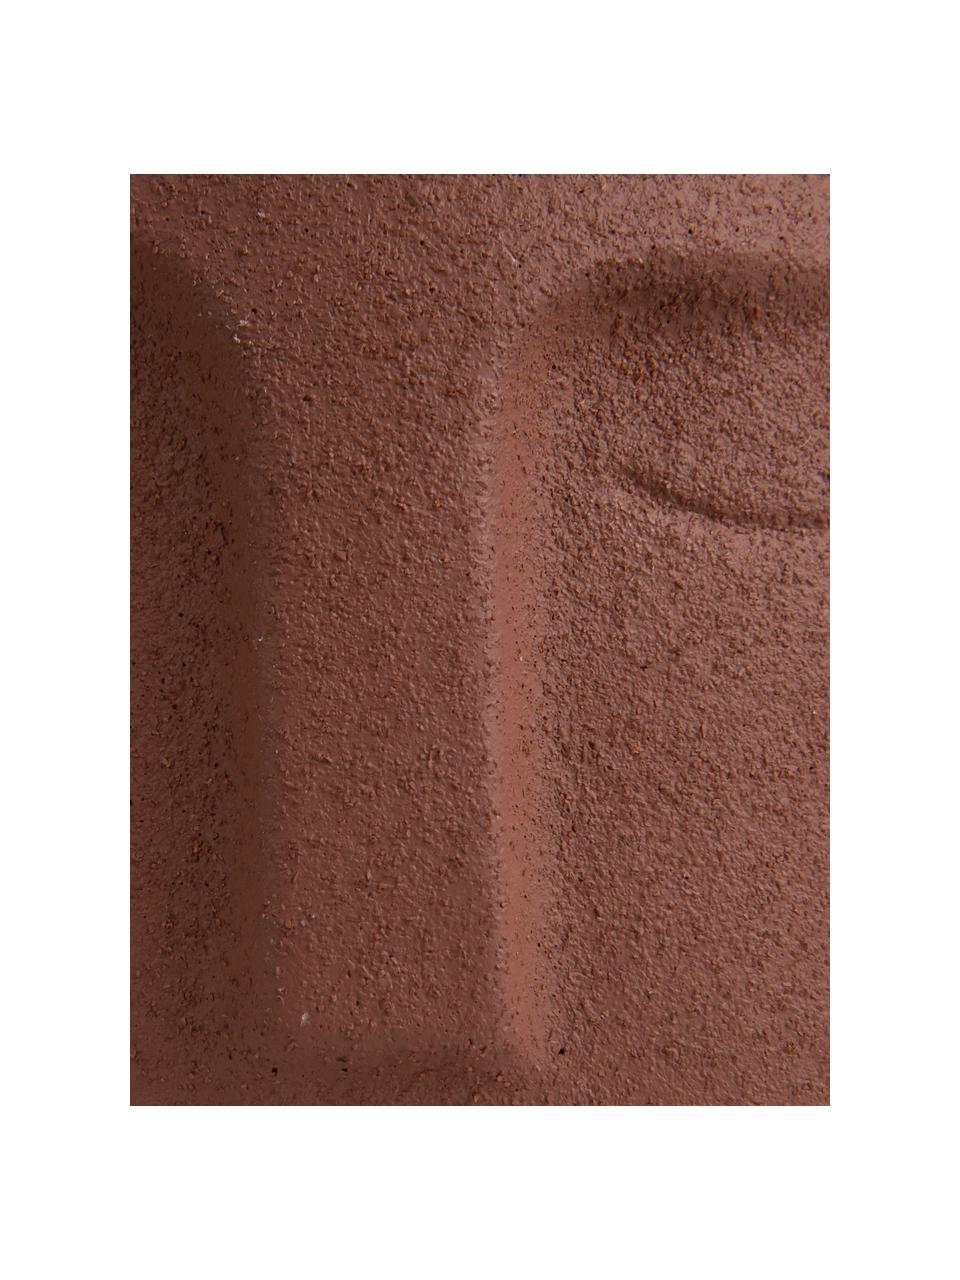 Portavaso viso di design in cemento color terracotta Face, Ceramica, Marrone, Ø 12,5 x Alt. 14 cm